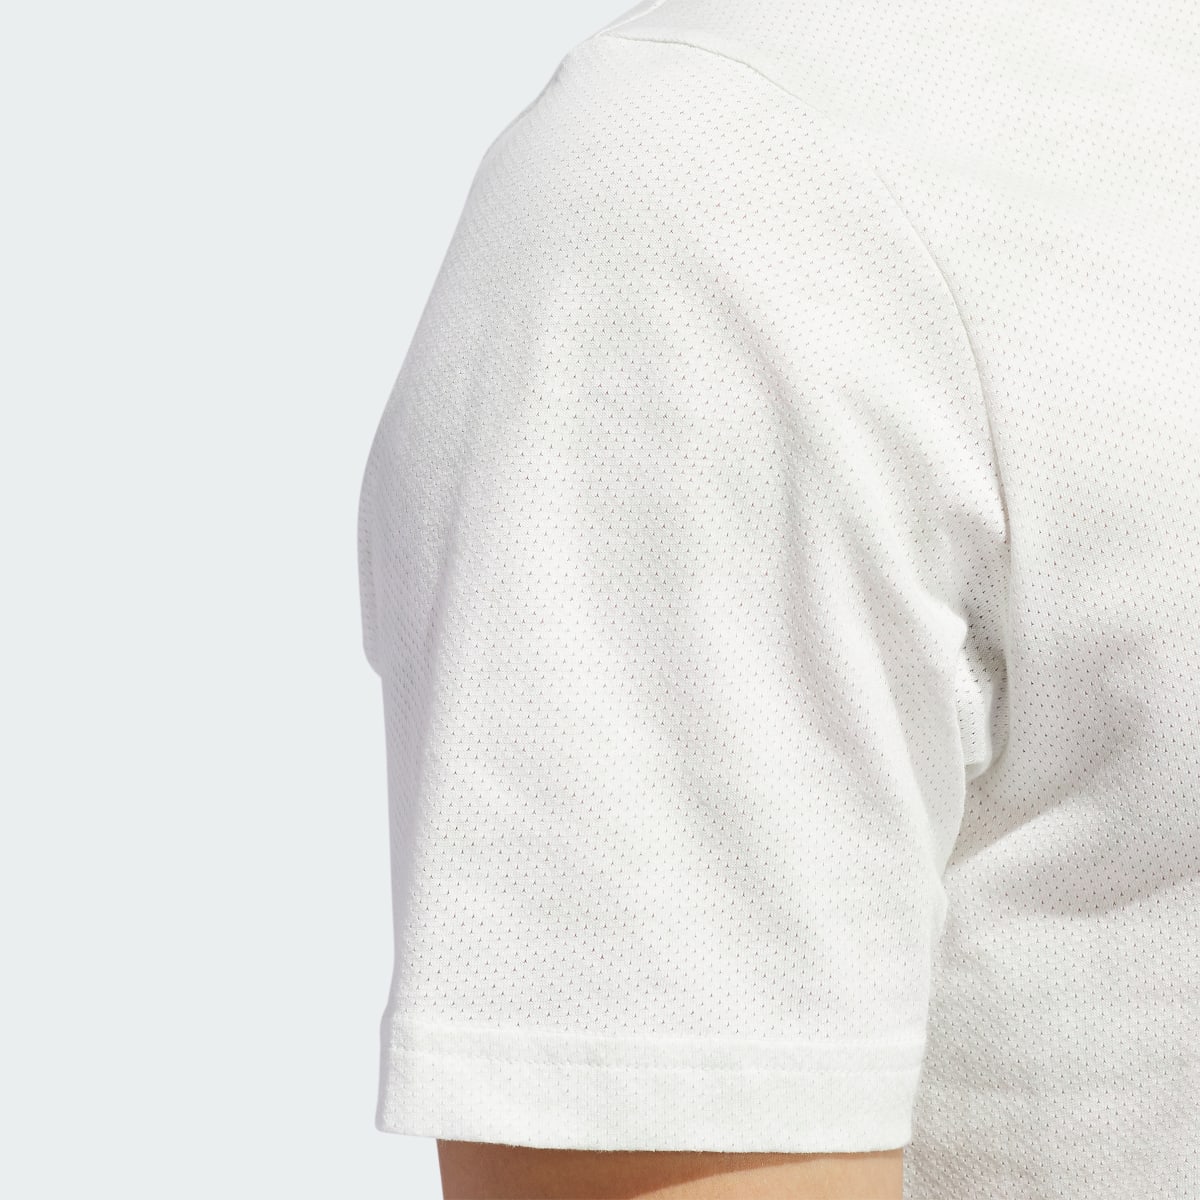 Adidas Go-To Printed Mesh Polo Shirt. 8